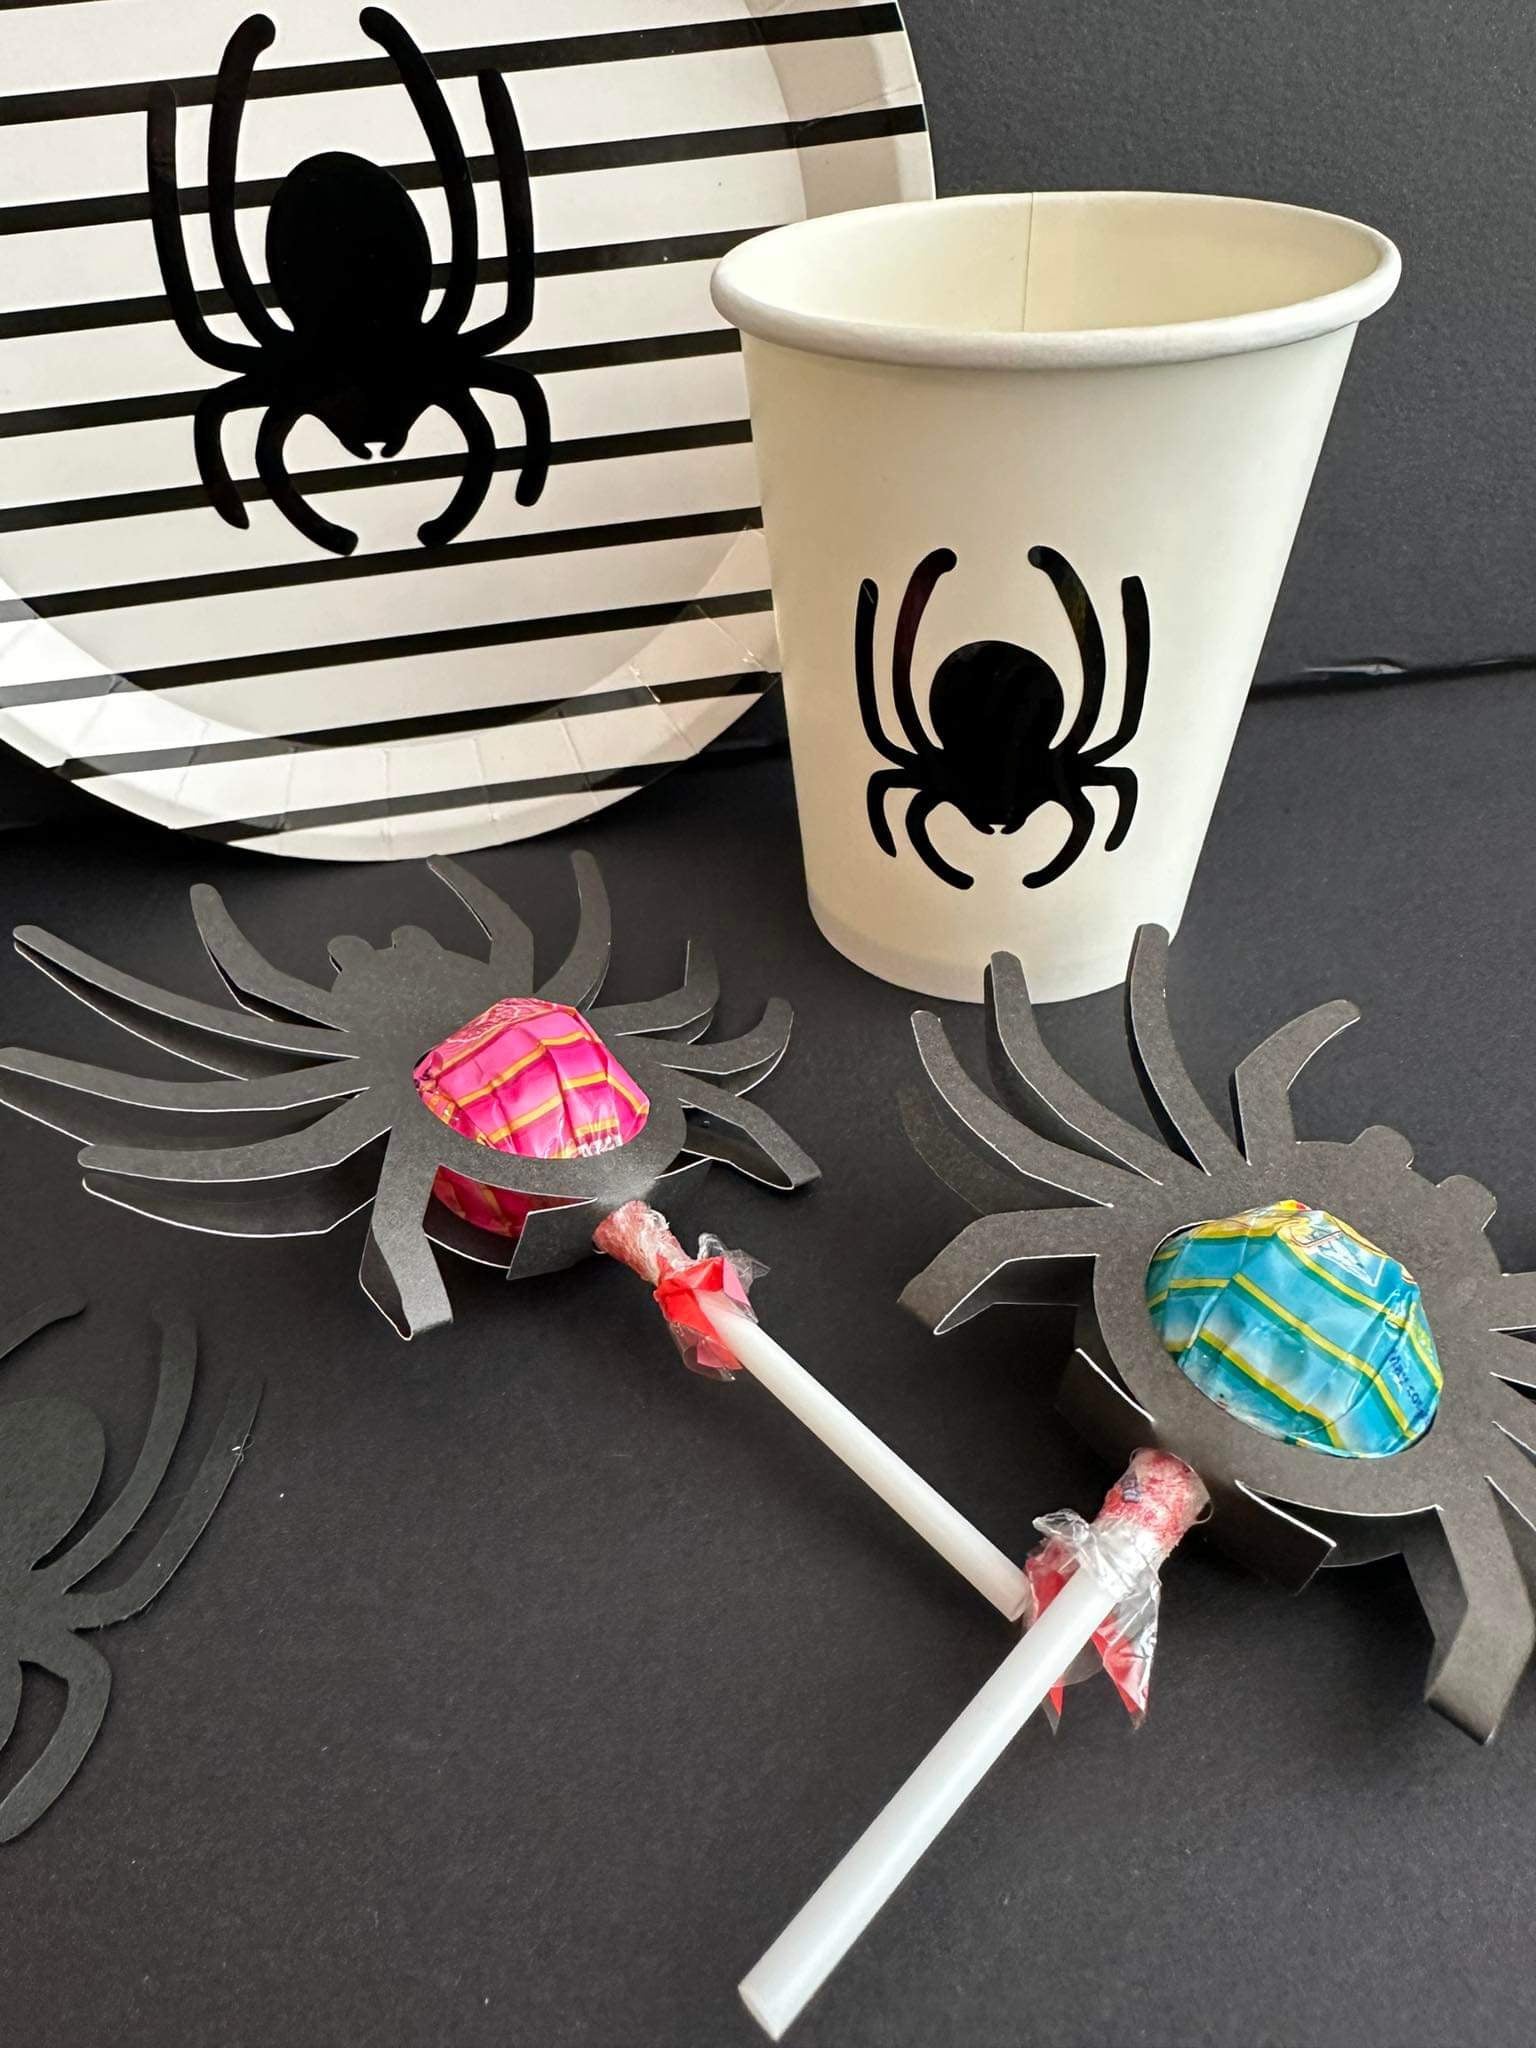 Spider themed lollipops